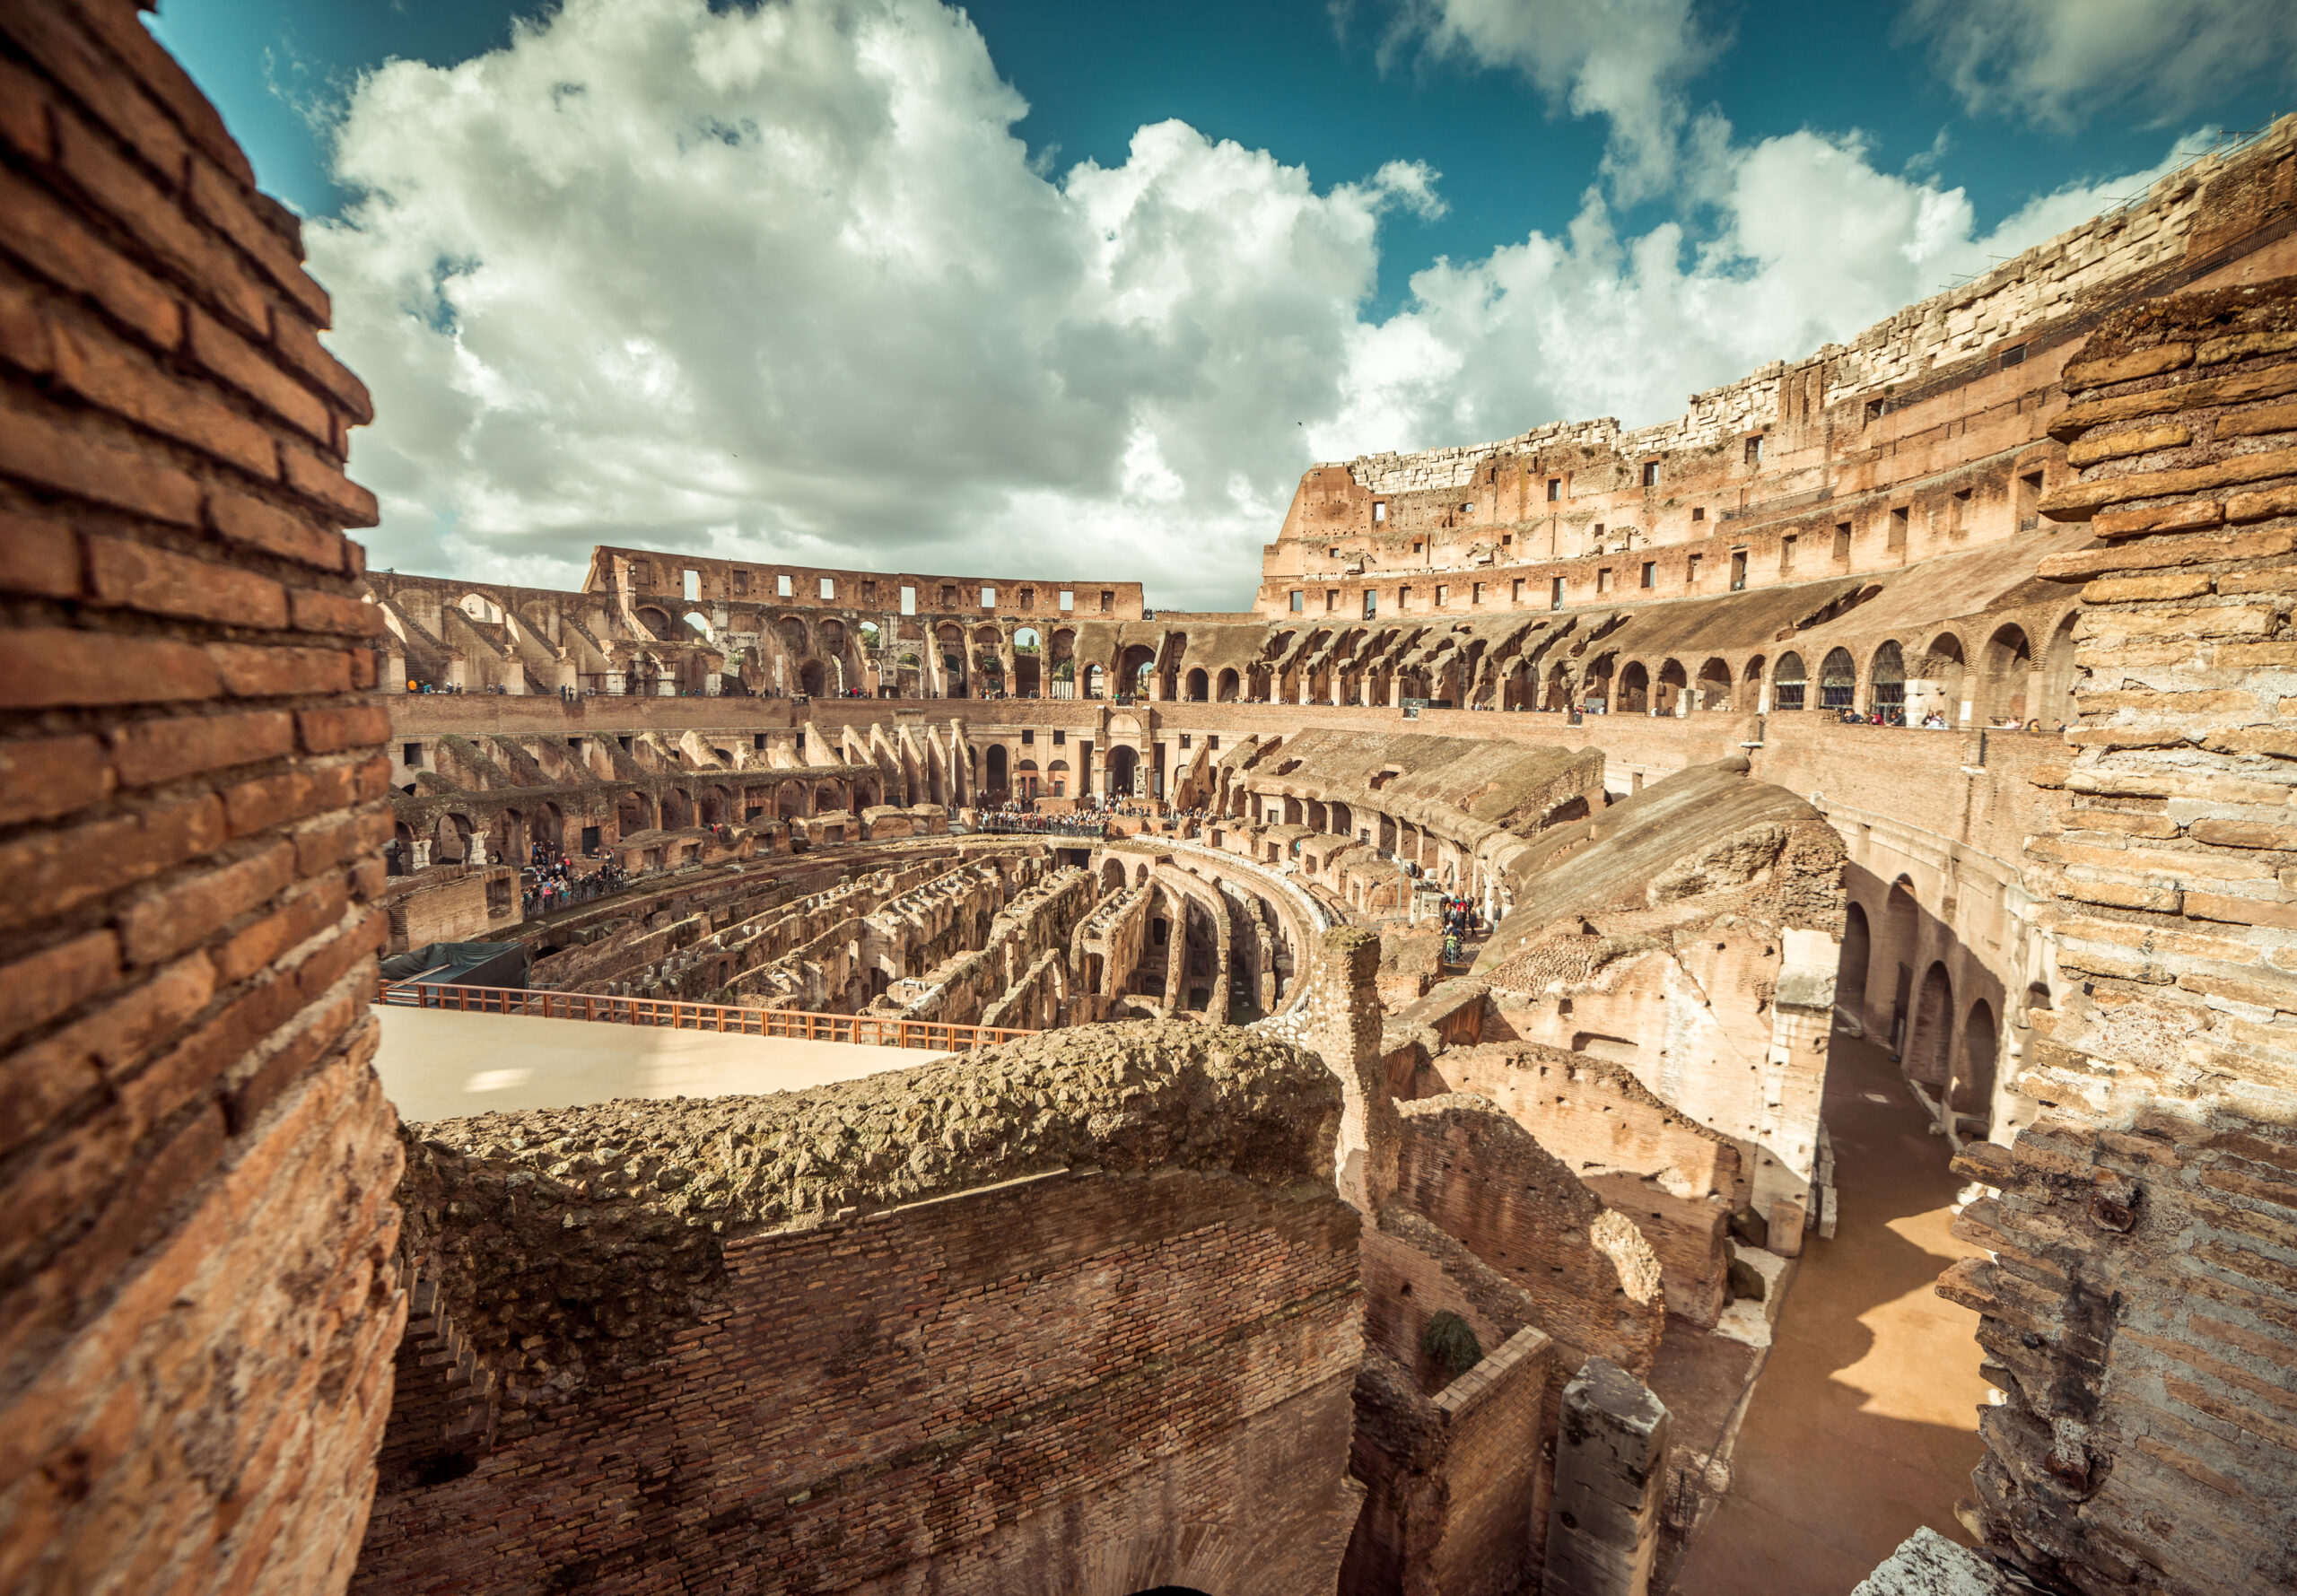 Coliseum interior Rome, Italy.